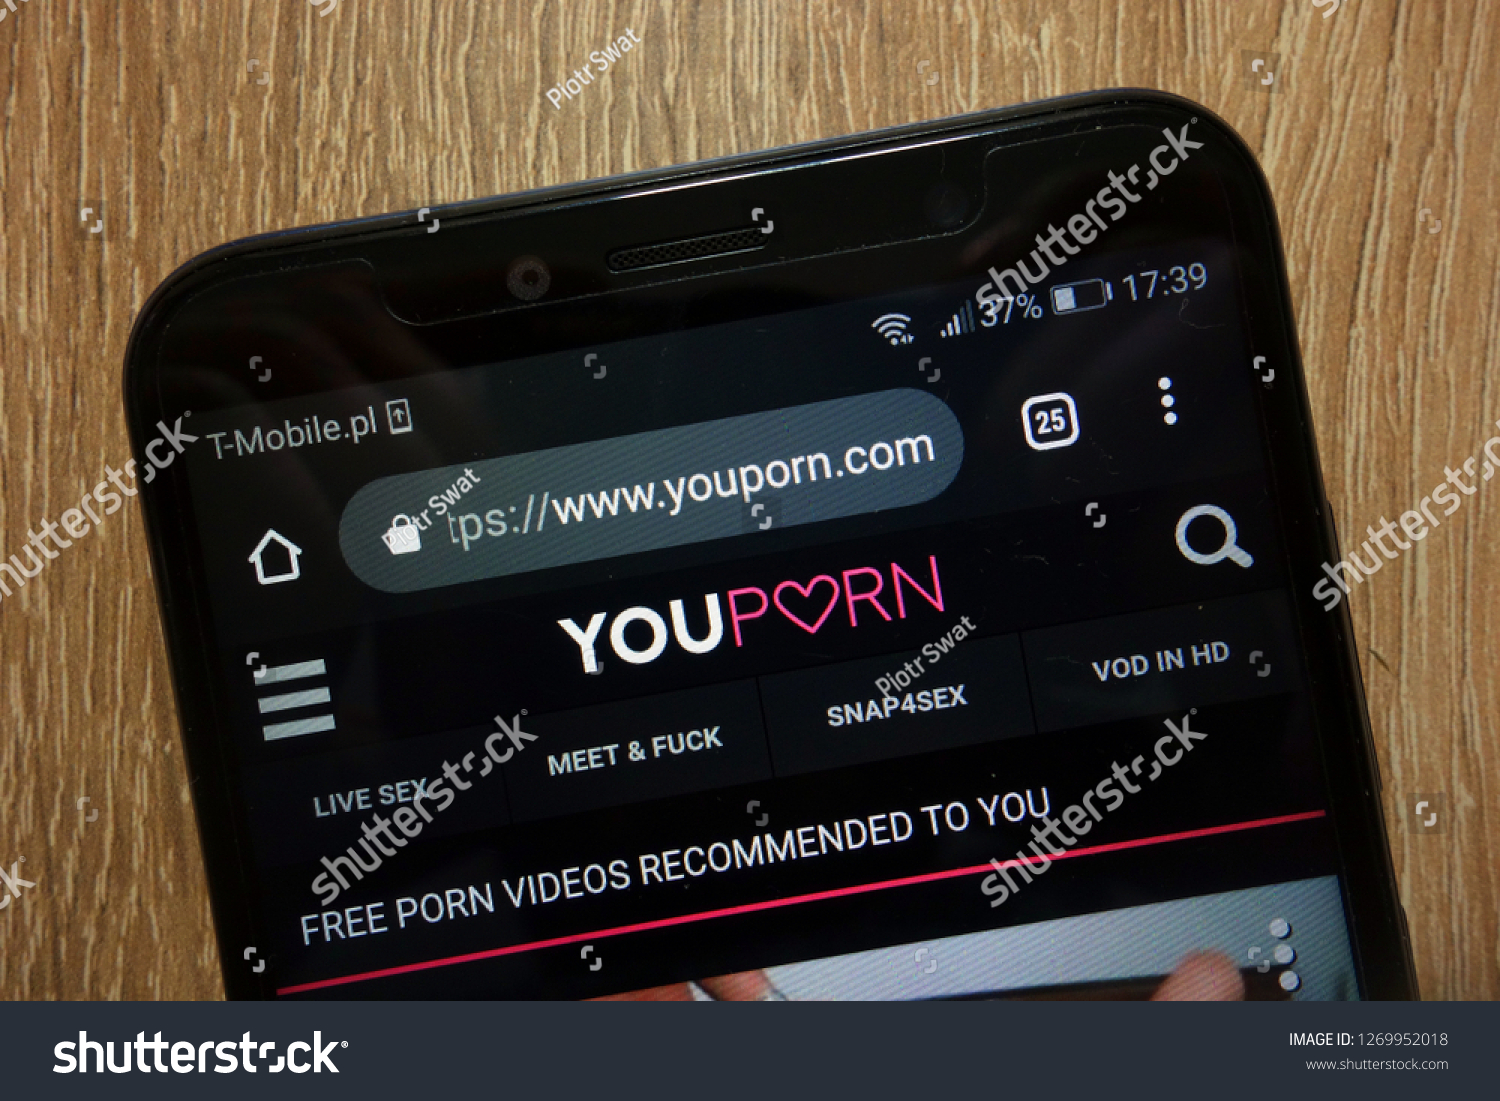 Www-youporn-com Free Porn